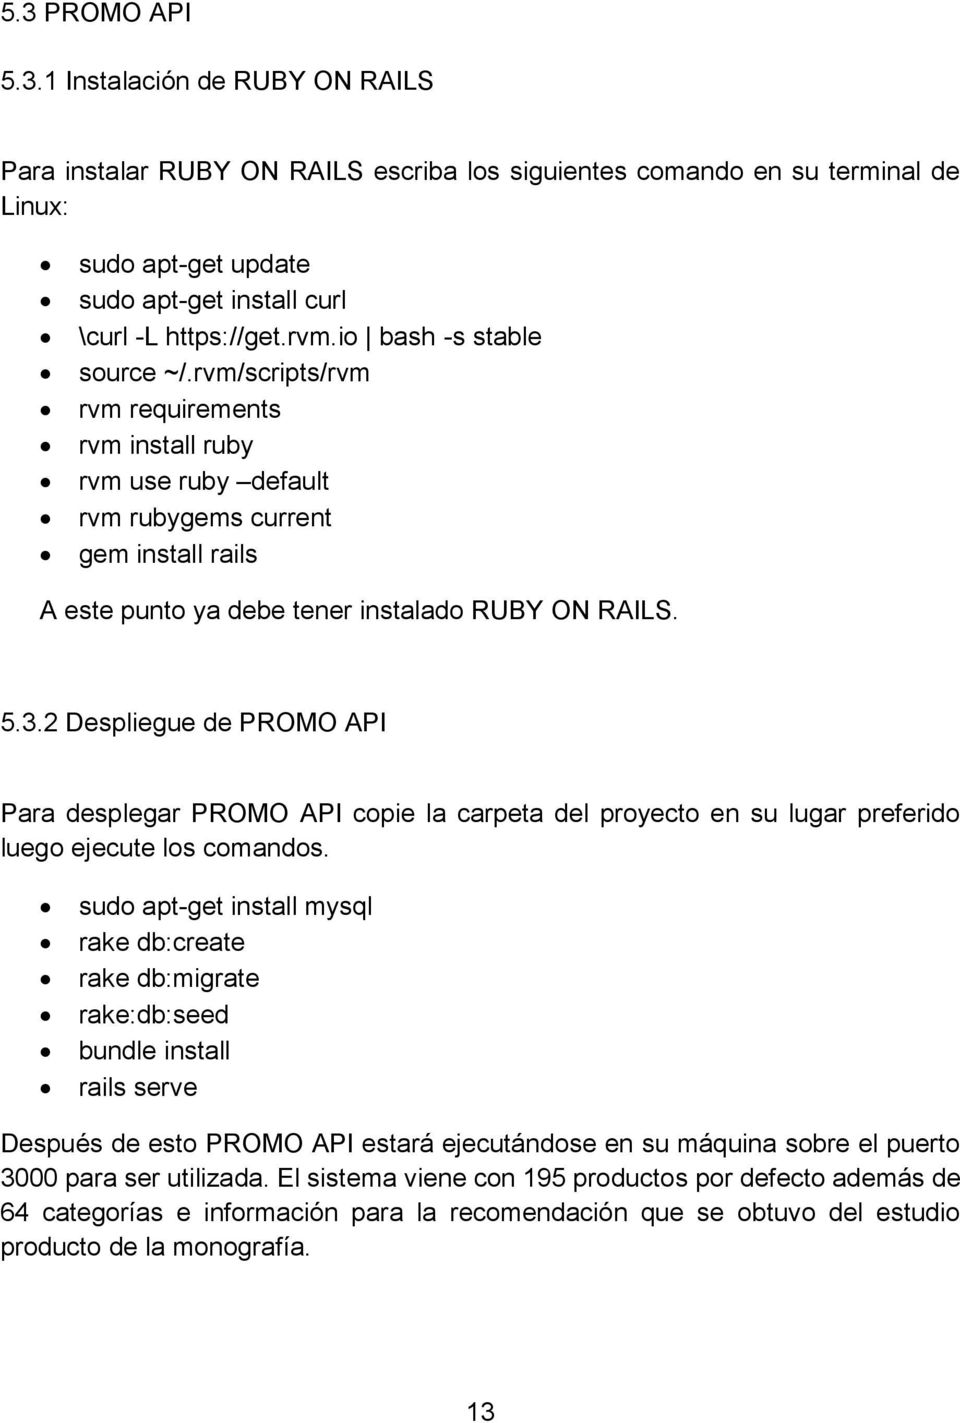 2 Despliegue de PROMO API Para desplegar PROMO API copie la carpeta del proyecto en su lugar preferido luego ejecute los comandos.